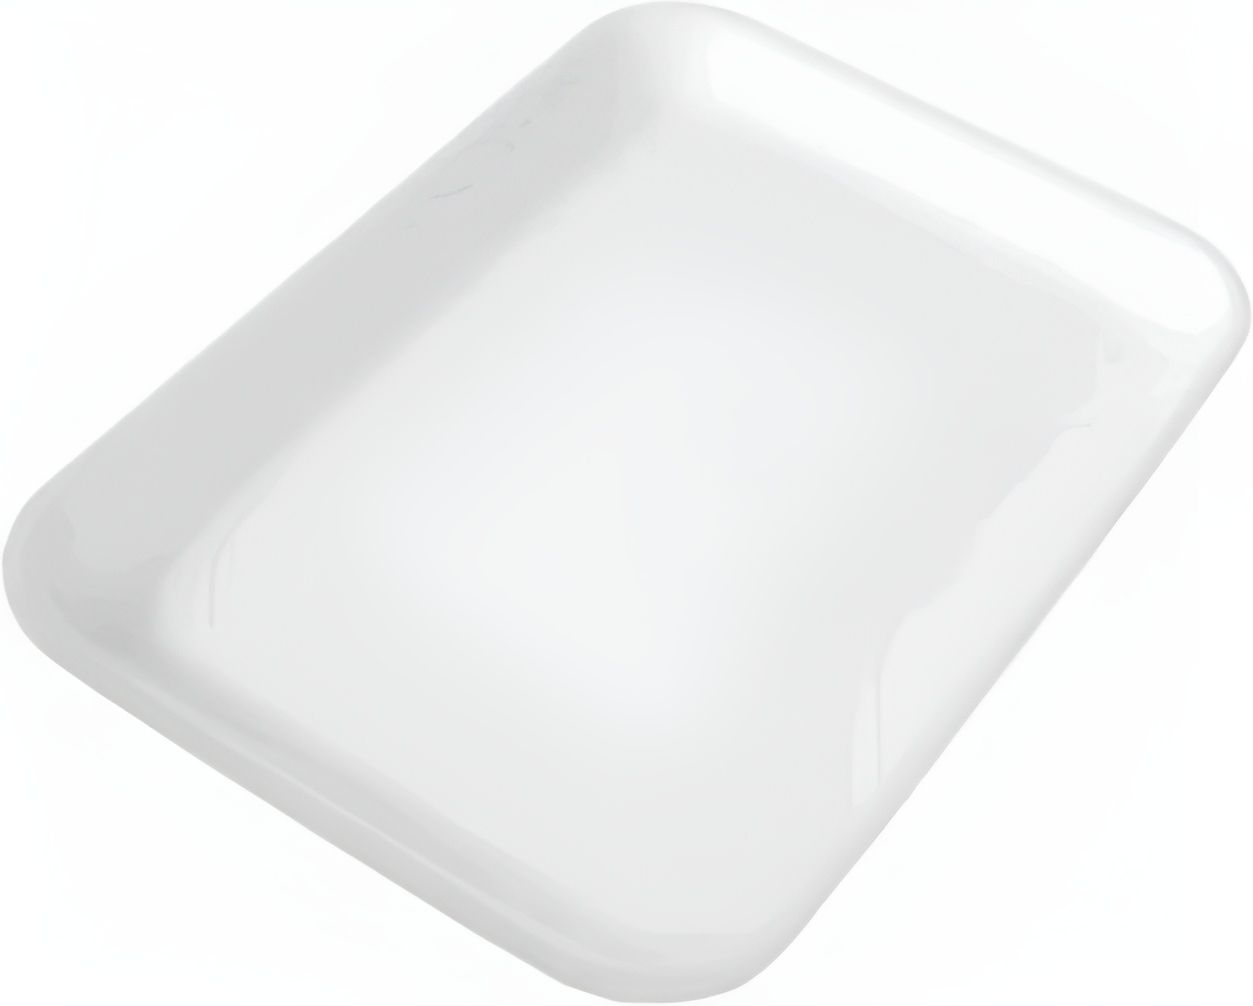 CKF Inc. - 8.25" x 5.75" x 0.6", 2-S White Foam Tray Meat Packaging, 500 Per Case - 88103